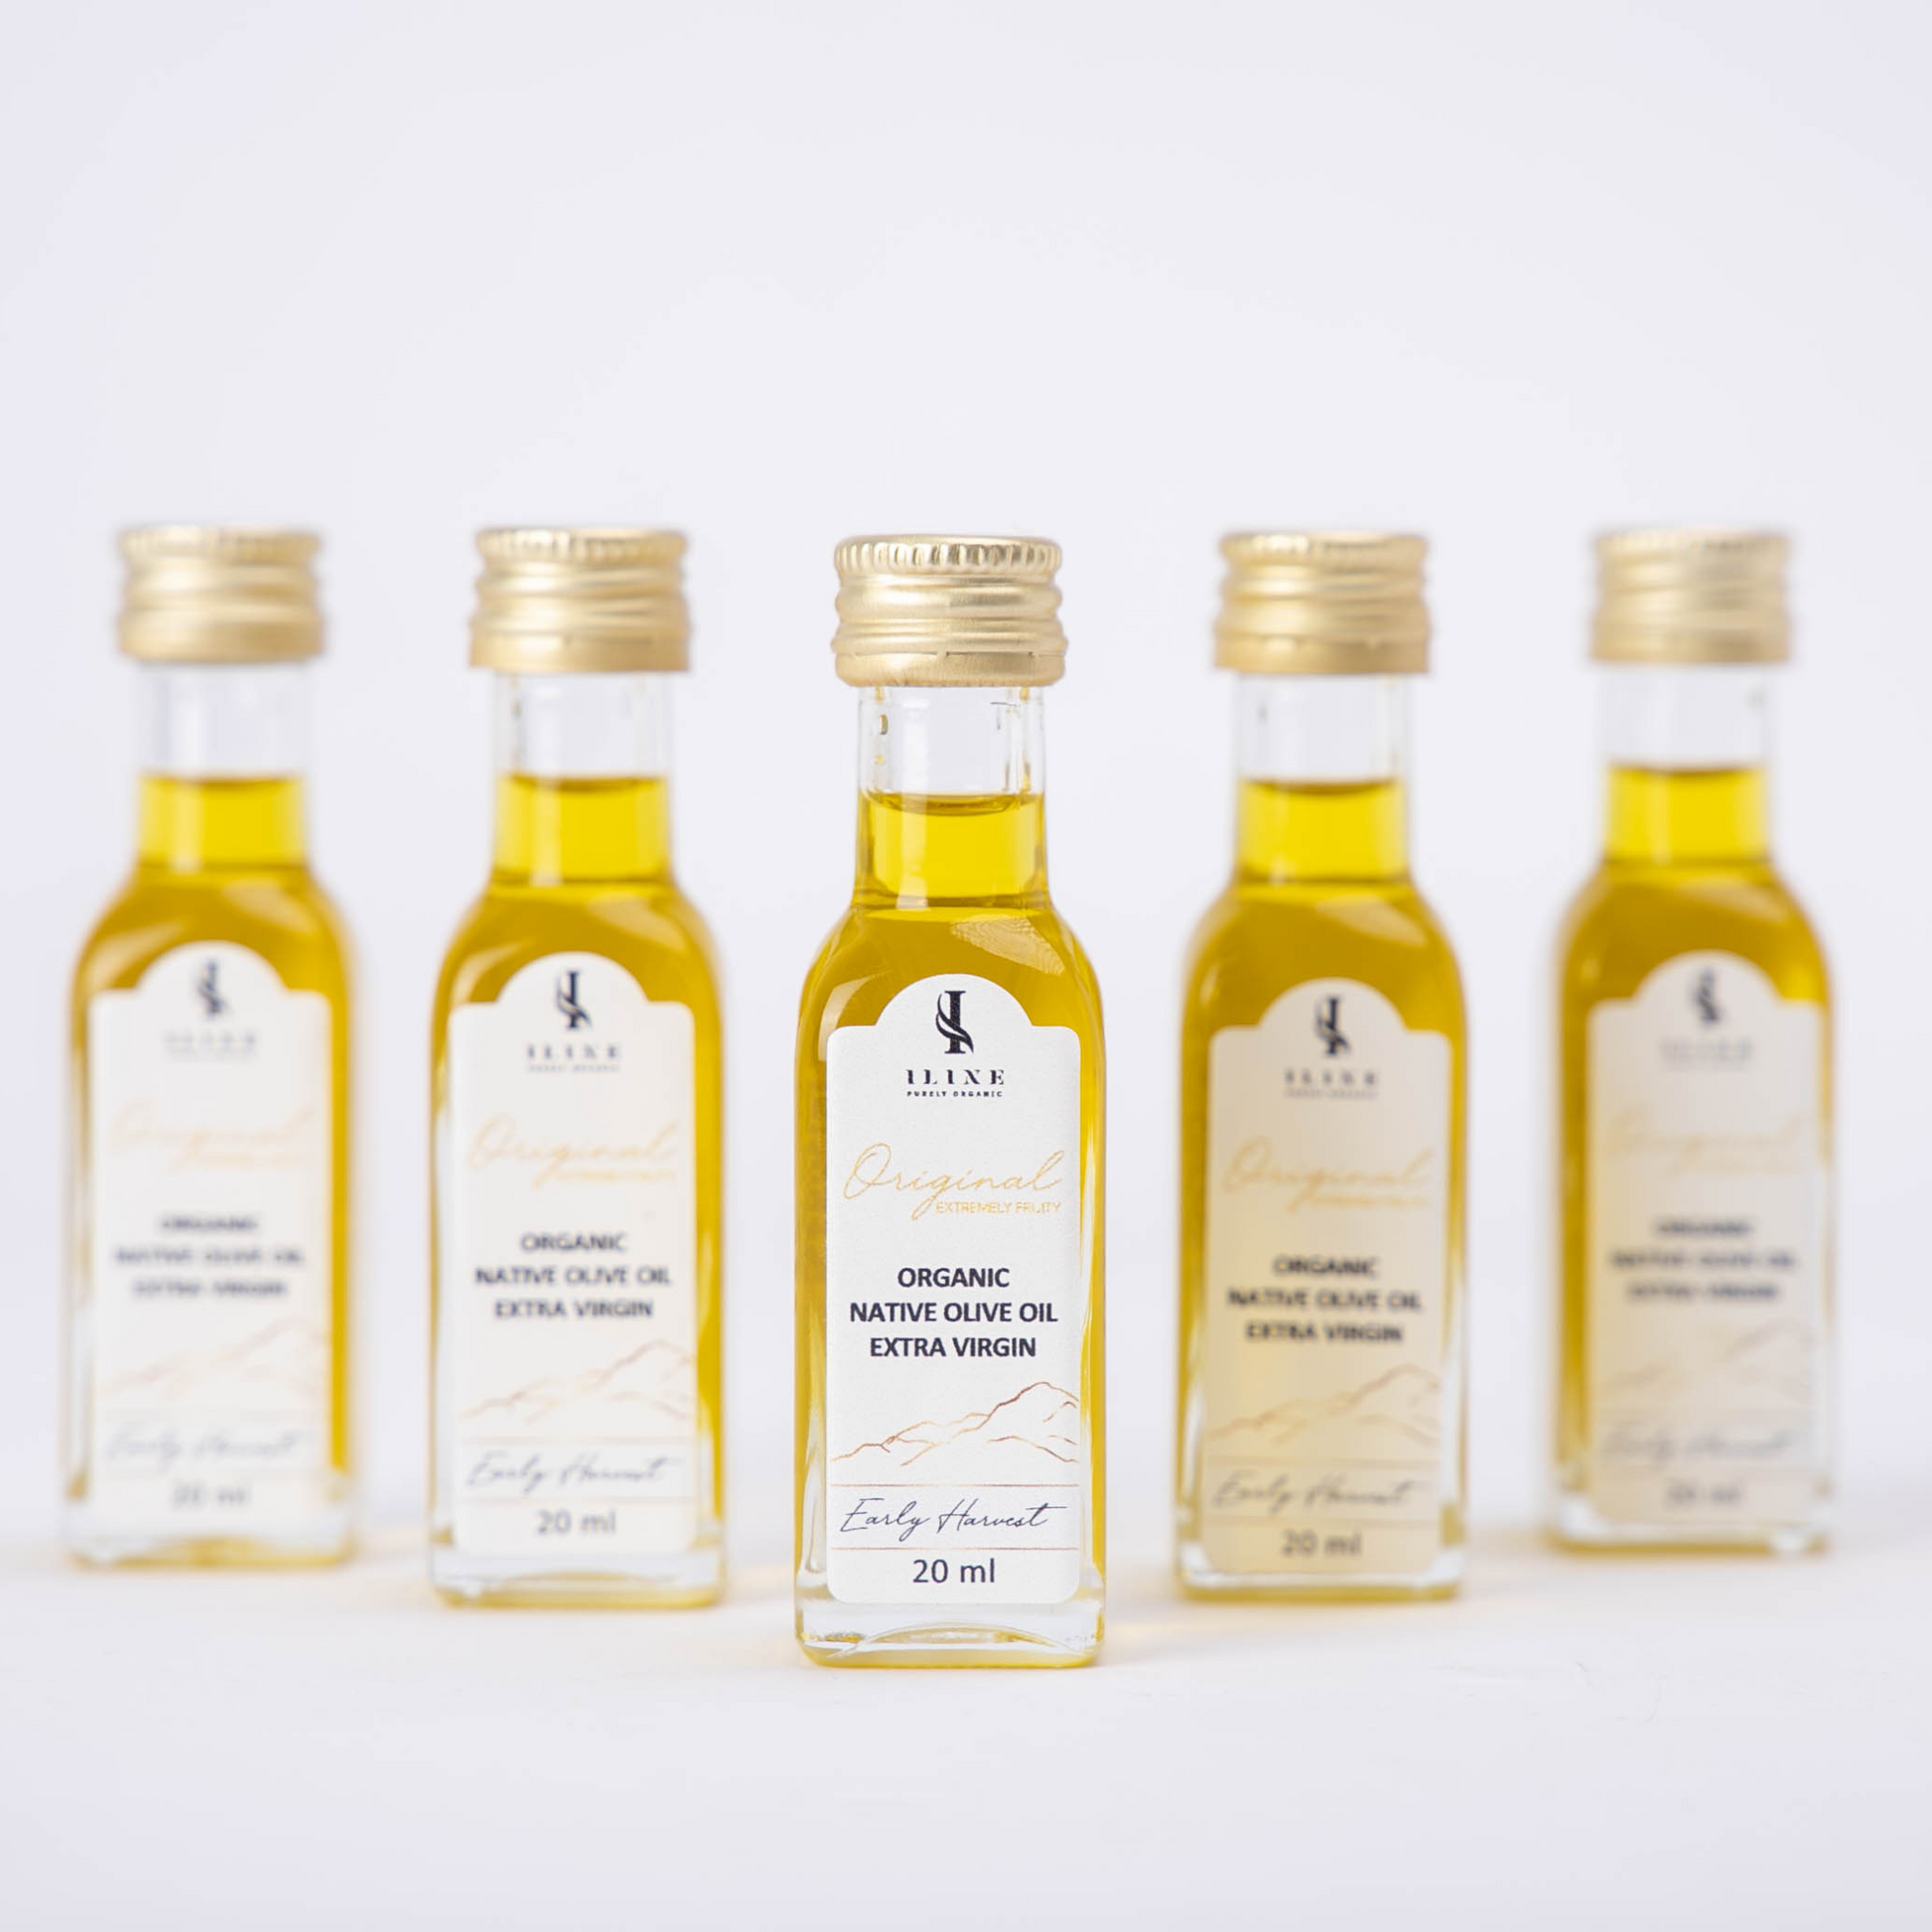 Mini-bouteilles d'huile d'olive extra vierge BIO Sierra de Yeguas.